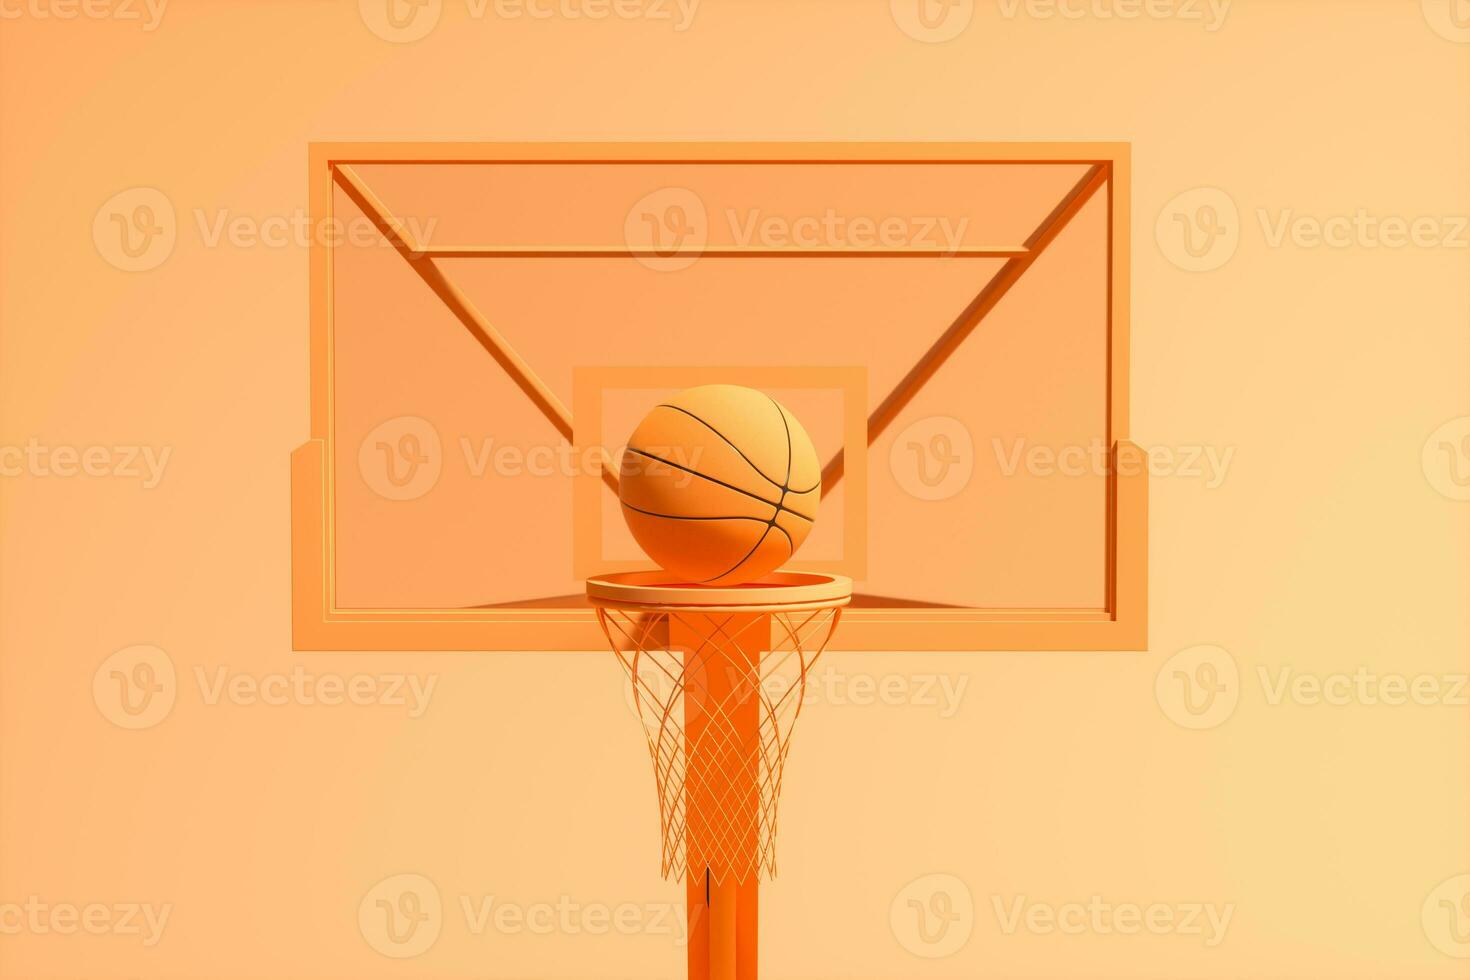 3d modelo do basquetebol stands, 3d Renderização. foto